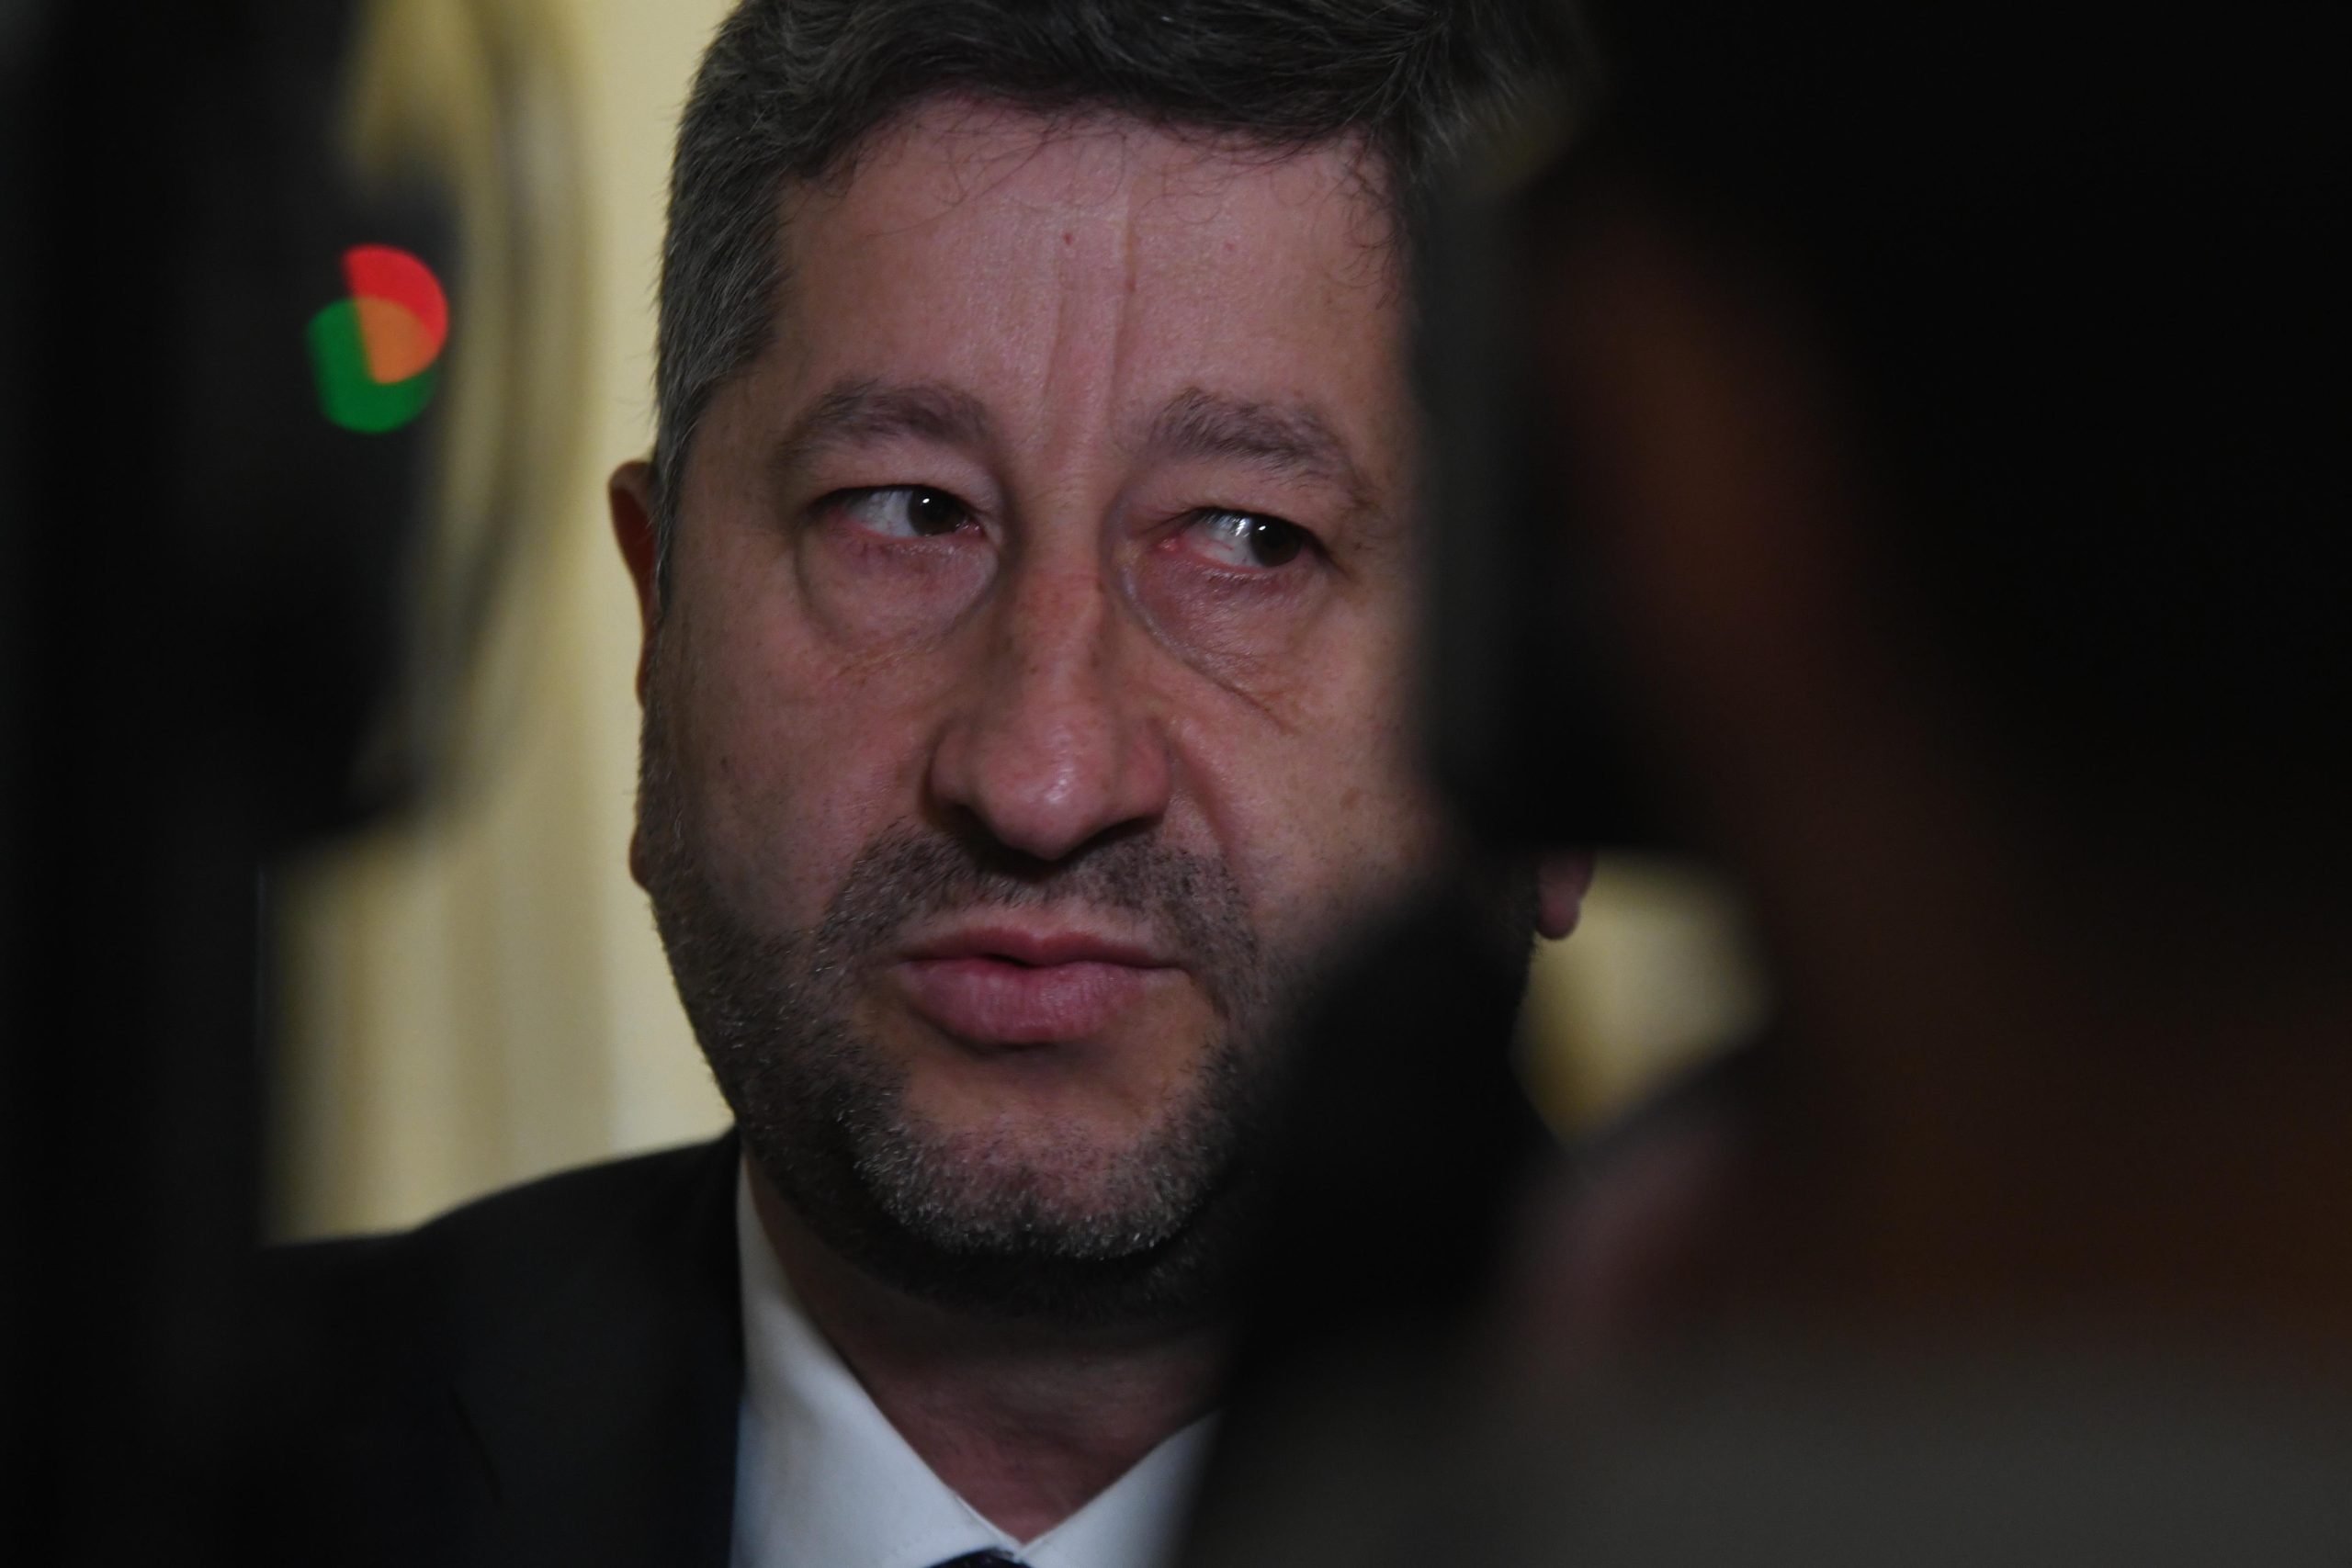 Президентът Румен Радев ще проведе консултации с парламентарната група на